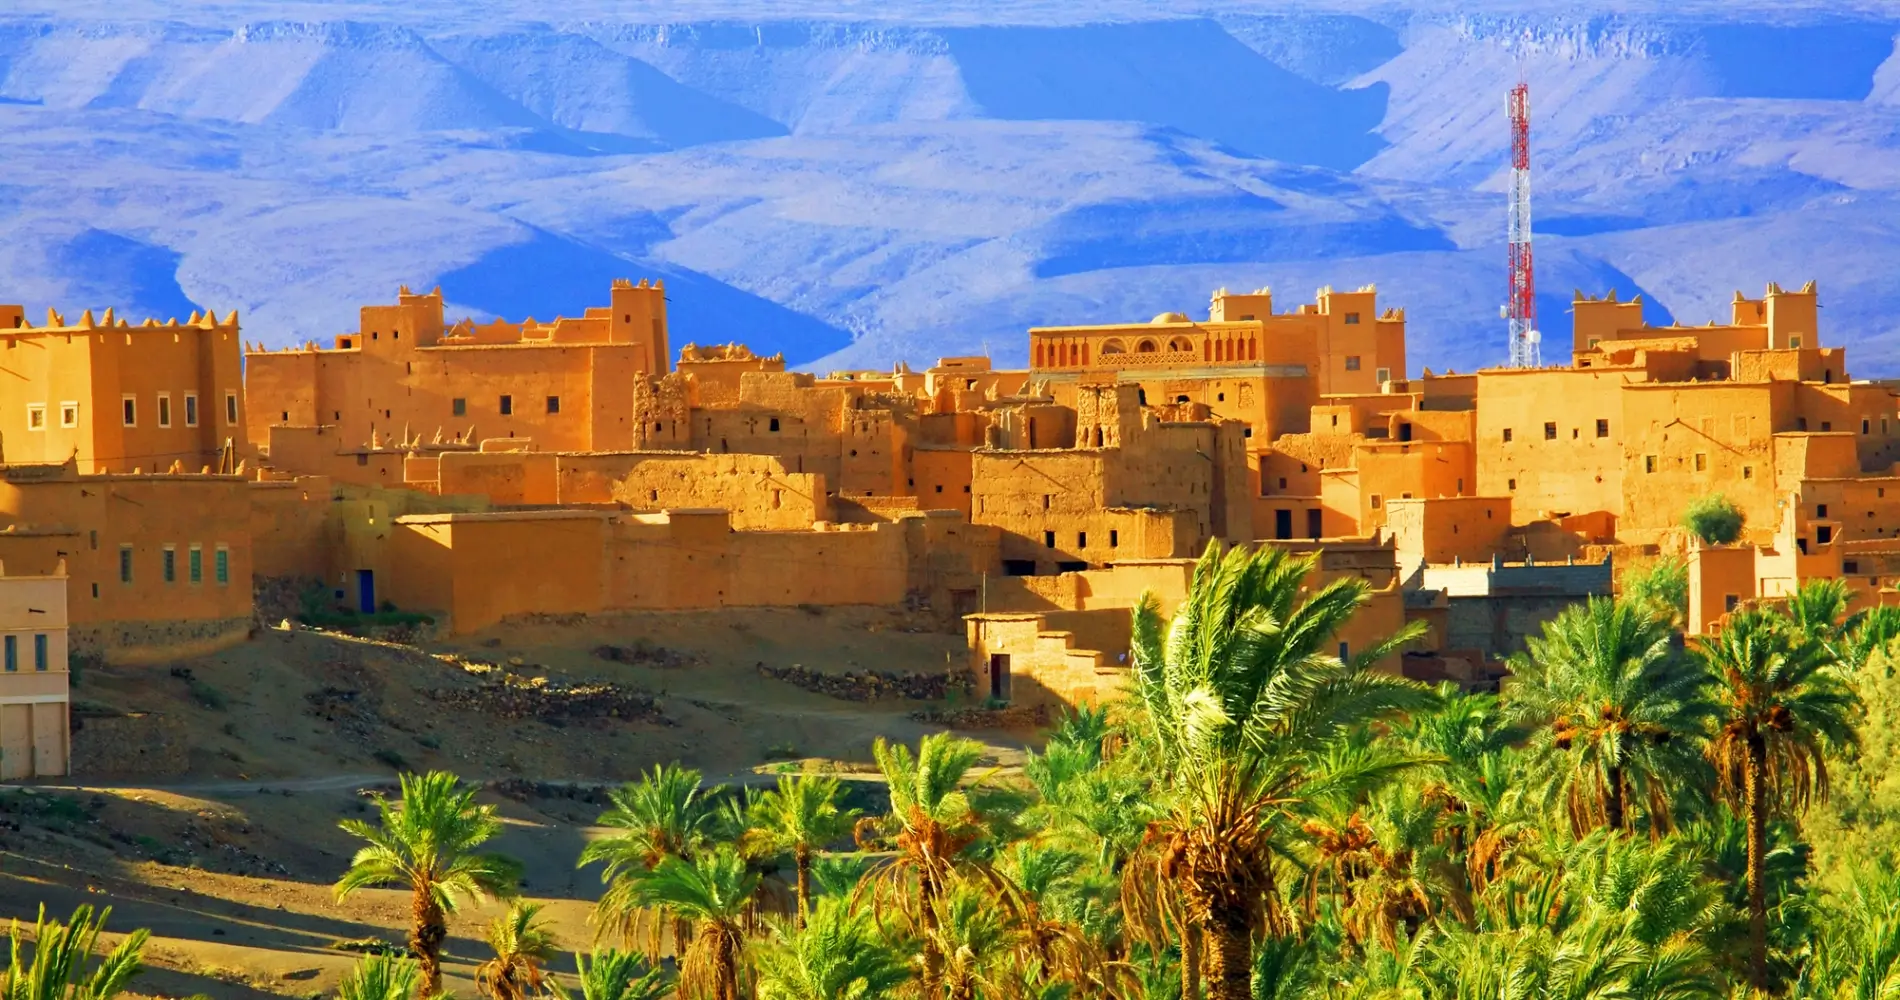 Locuri de vizitat in Maroc